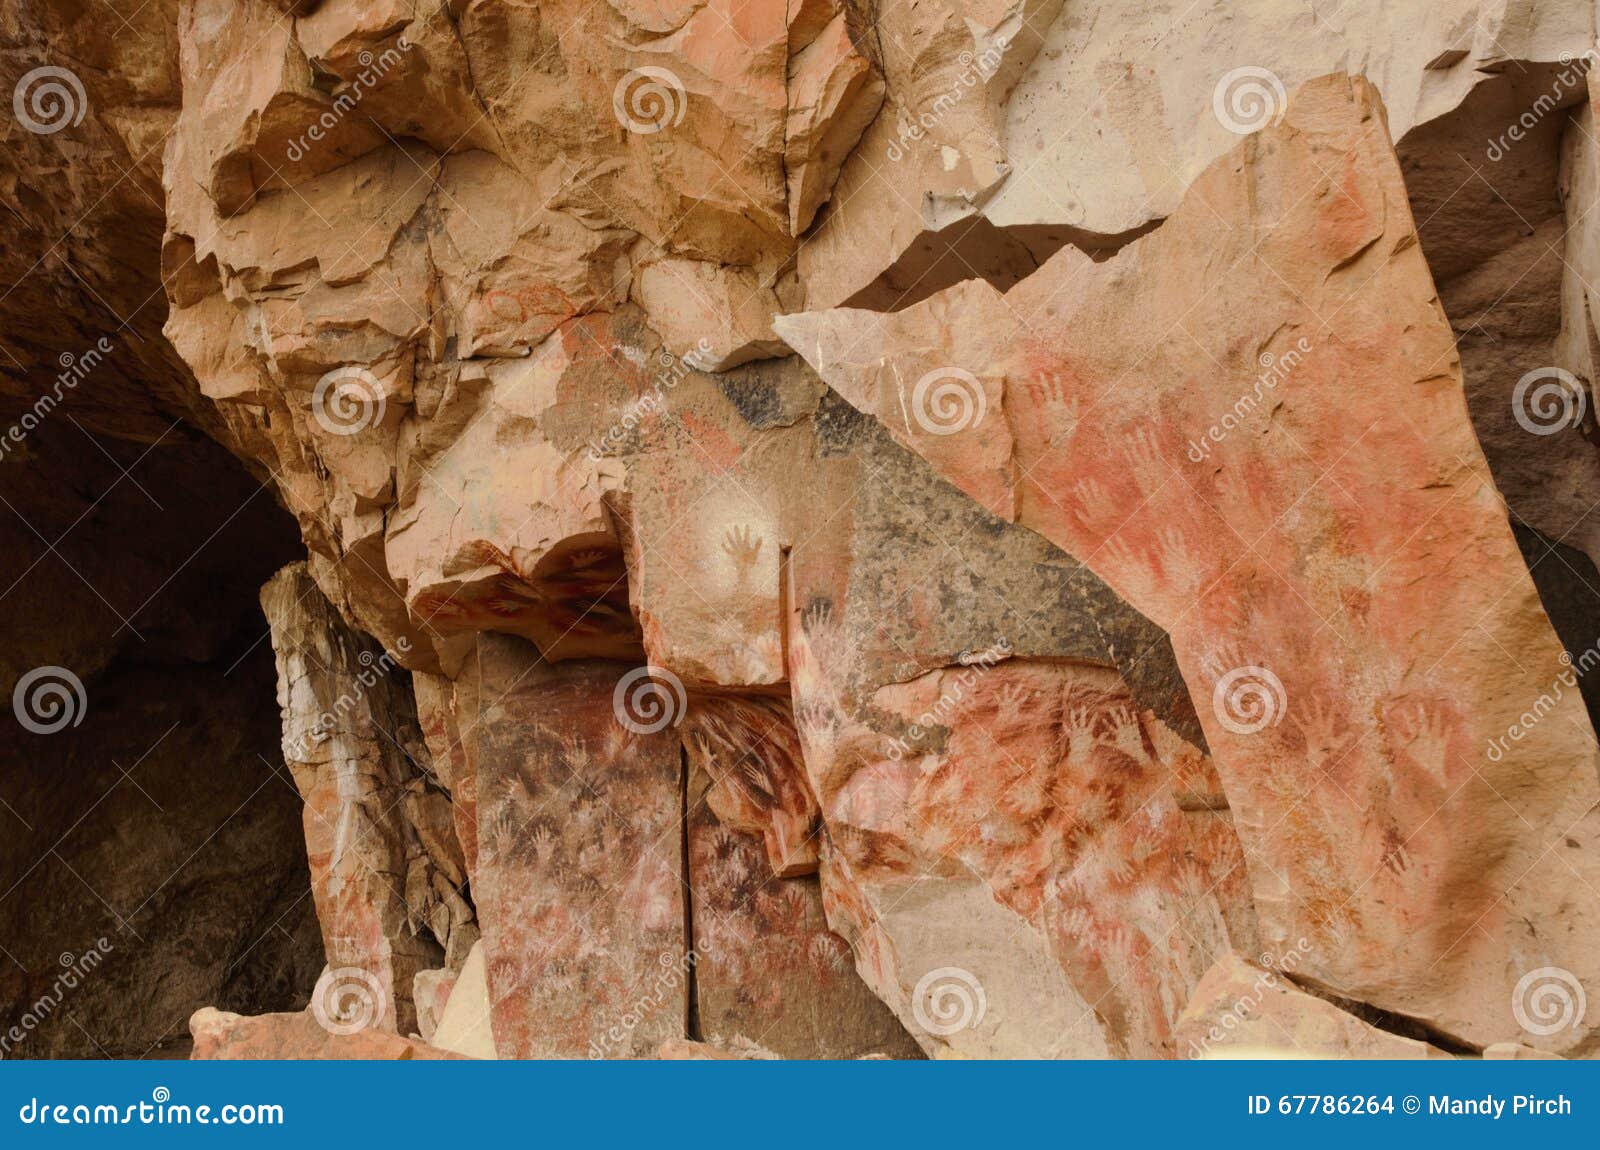 World heritage site Cueva de las manos close to the village Perito Moreno.